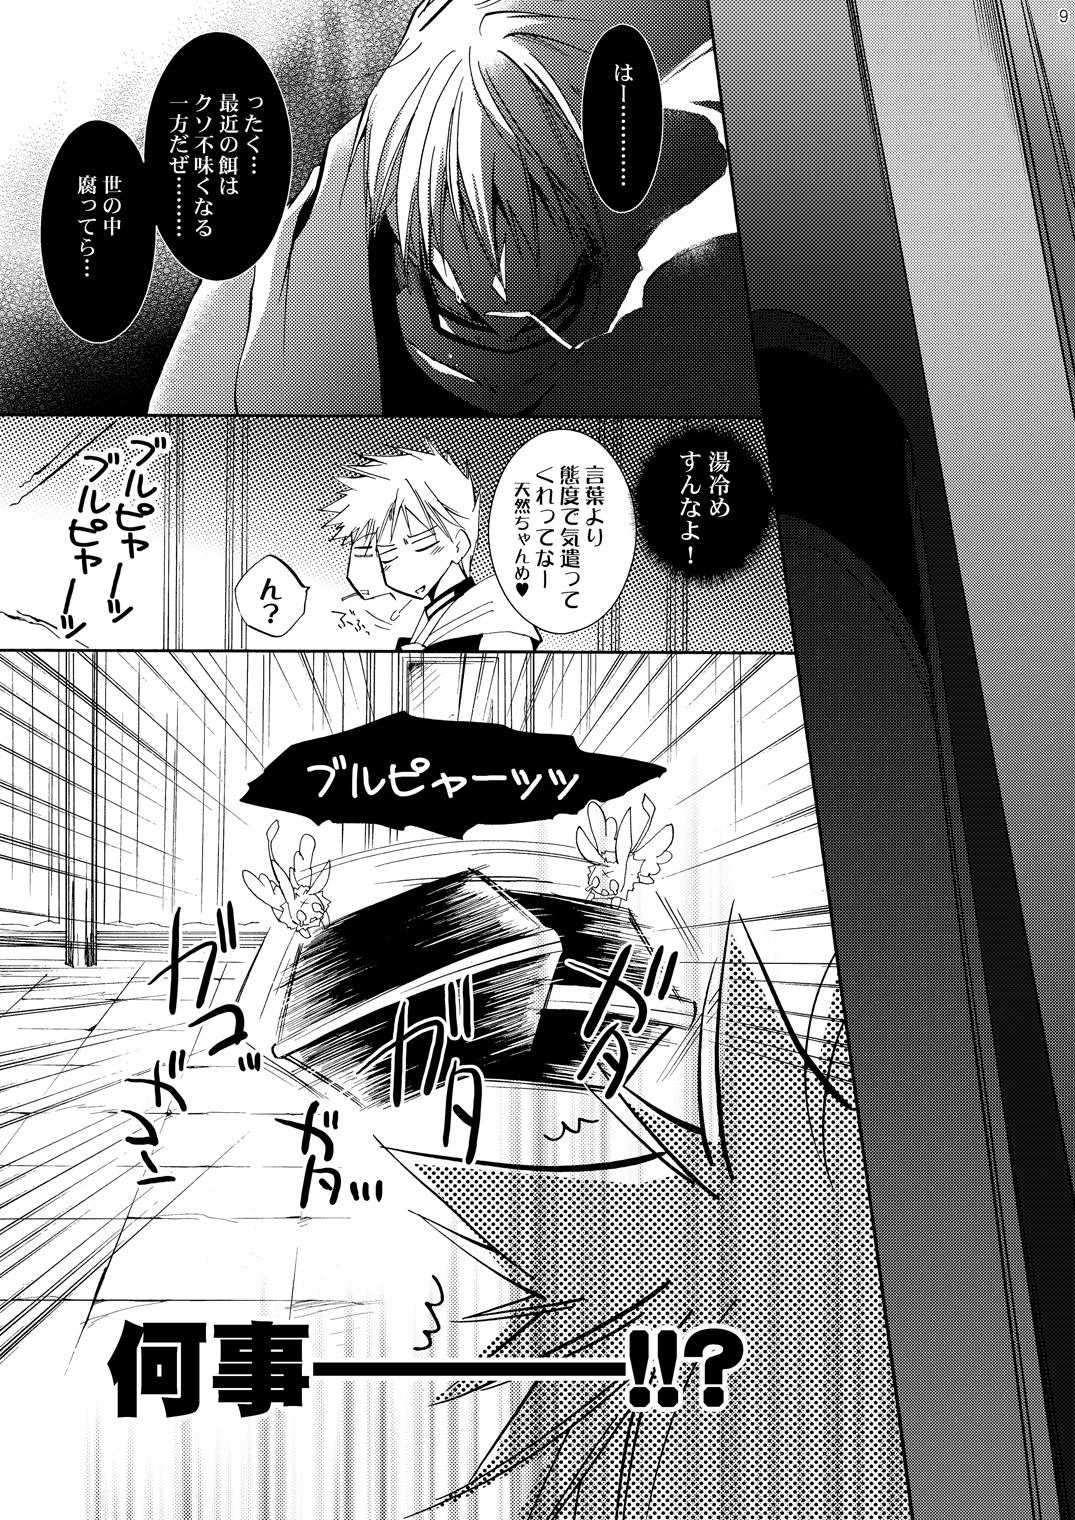 Leite Hananemu no itsu waga mune ni kimi nemuru - 07-ghost Stockings - Page 8